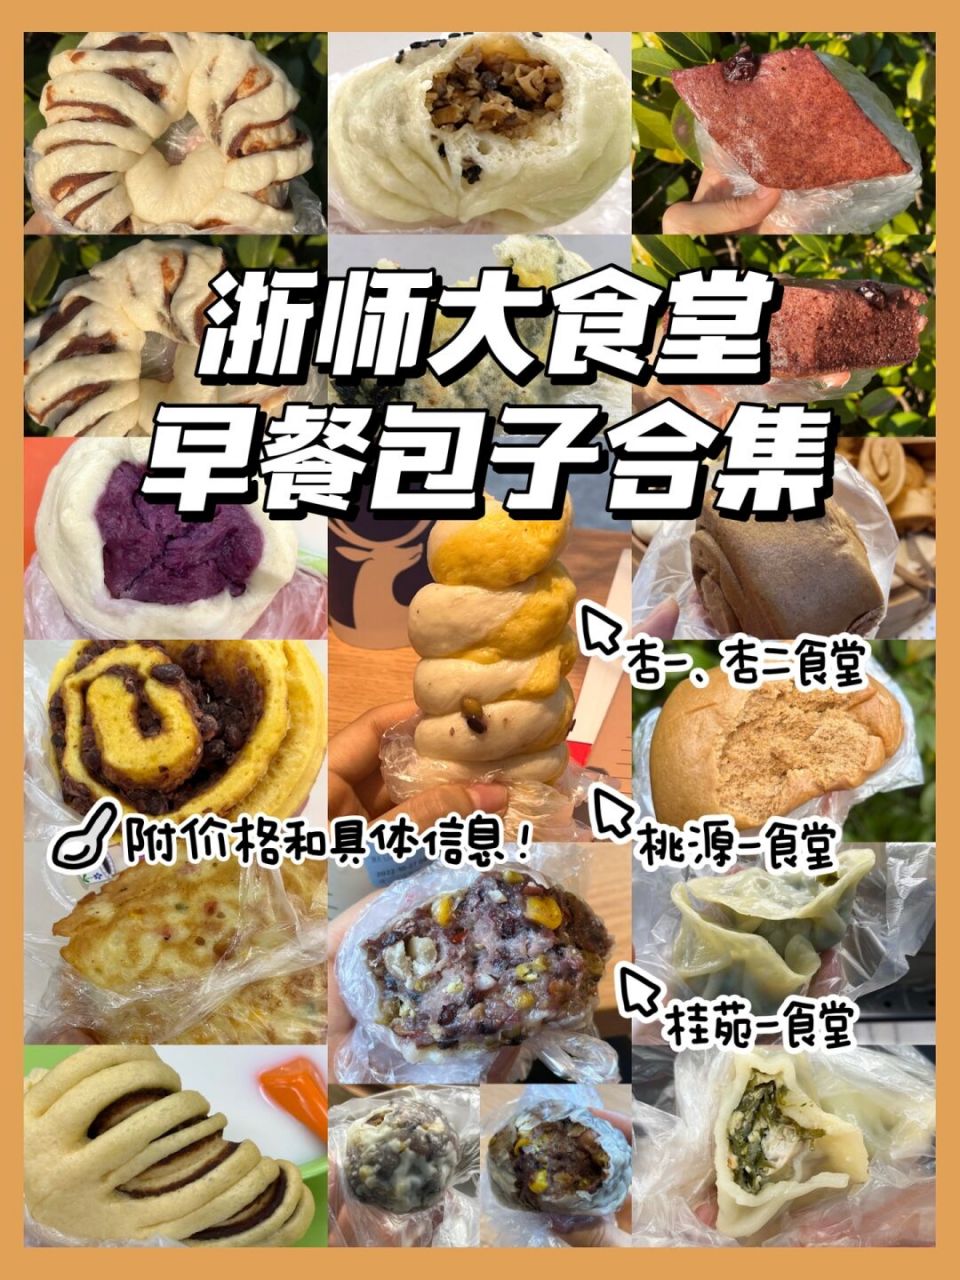 浙江师范大学 食堂图片